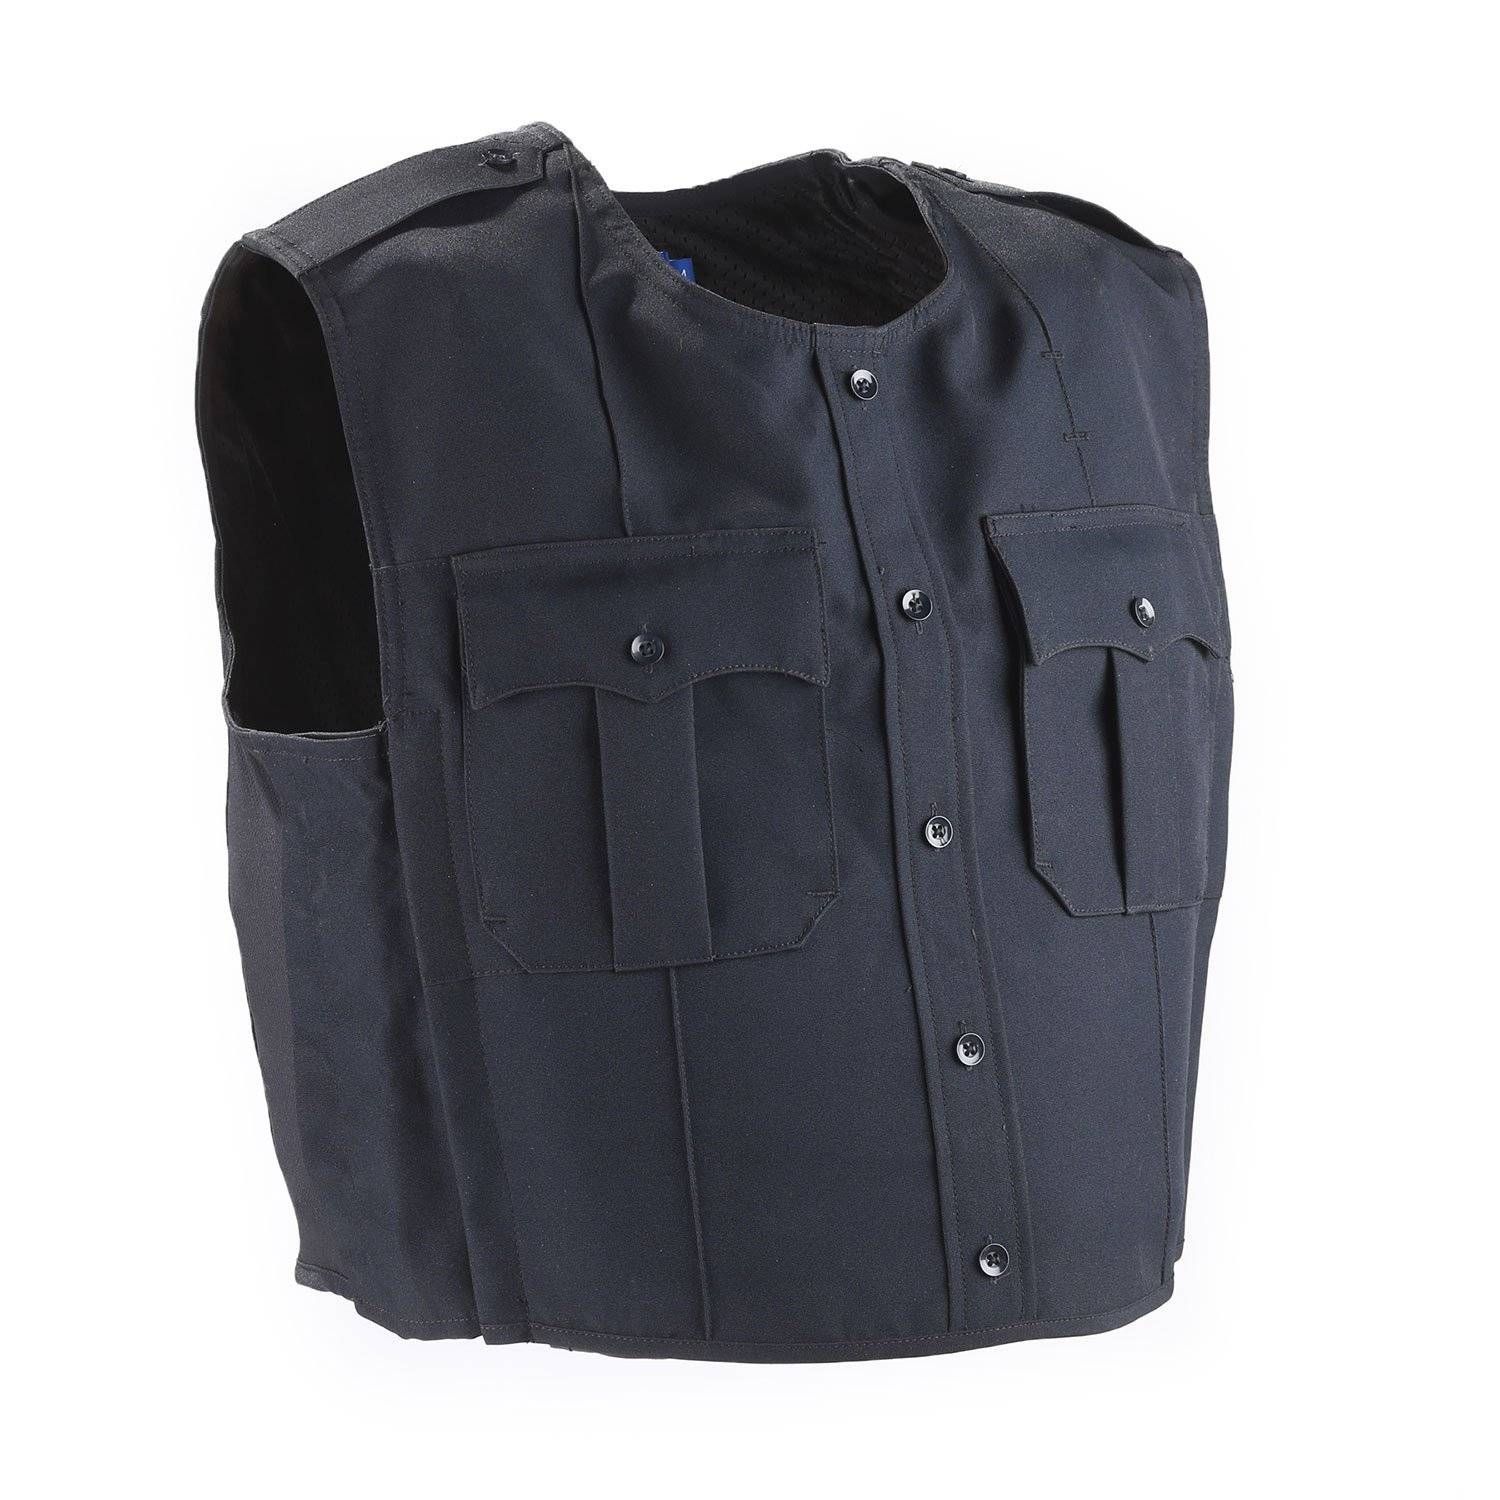 Spiewak Uniform Shirt External Vest Carrier